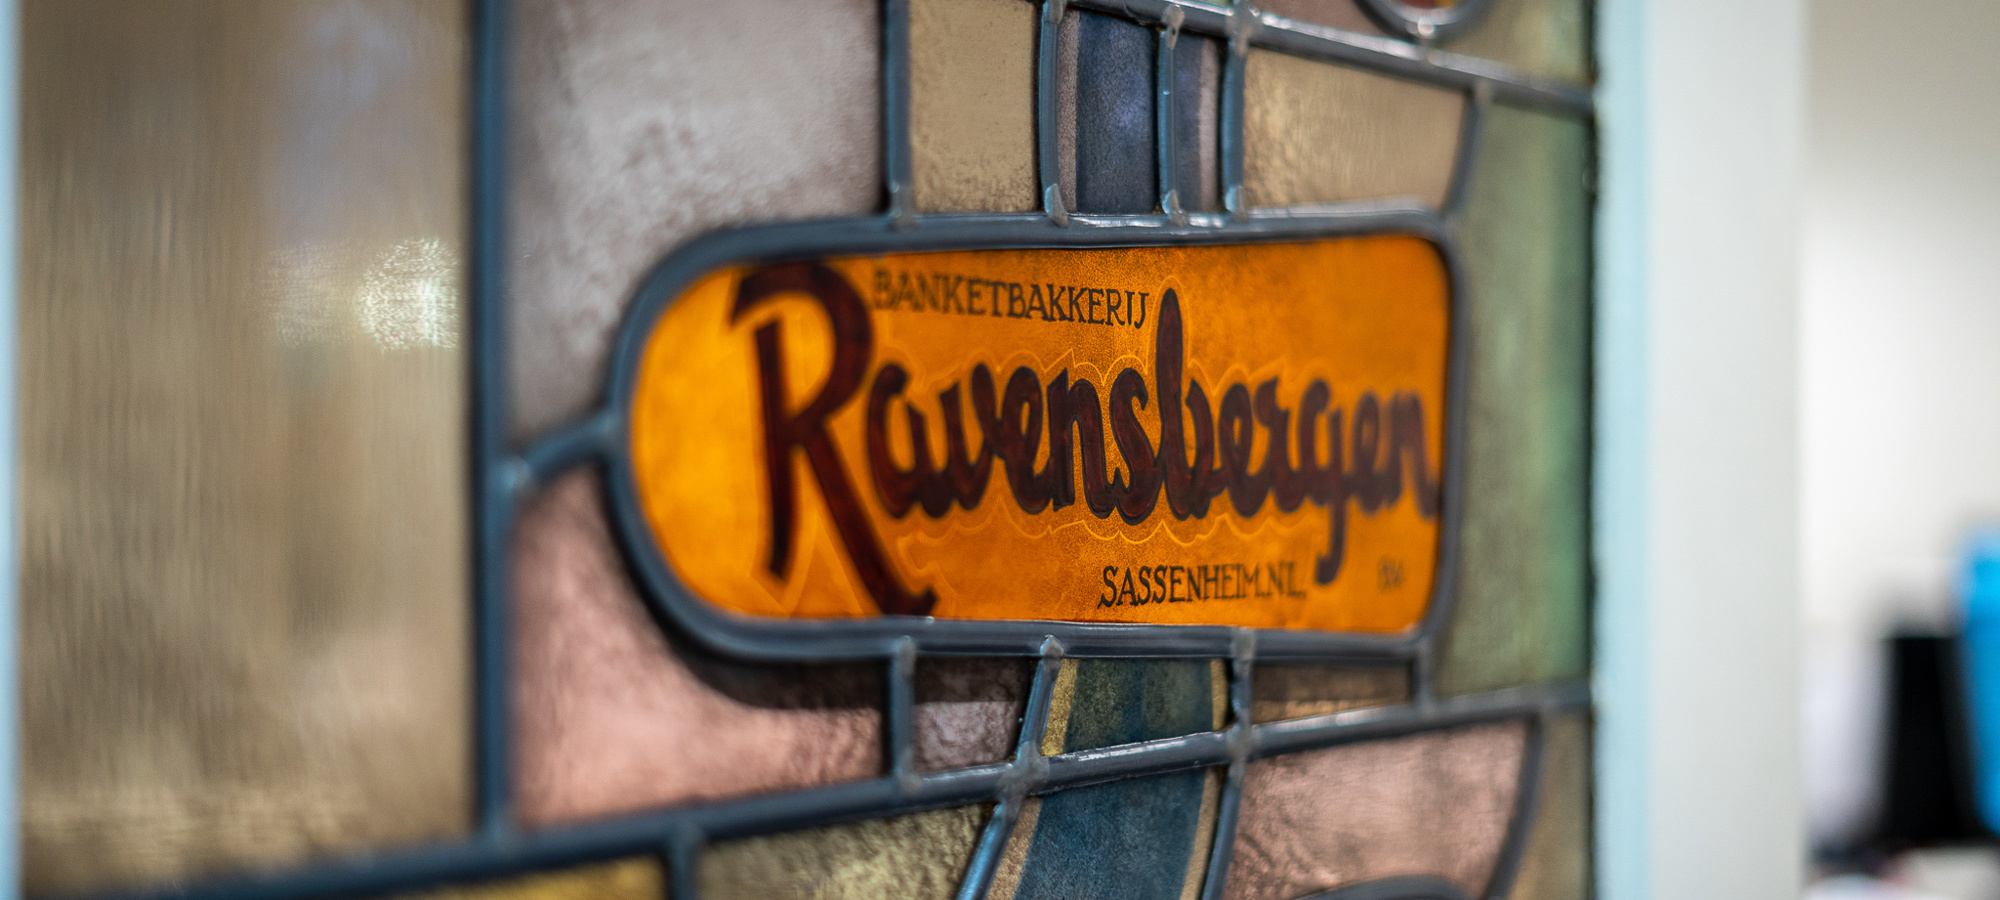 1 Ravensbergen Foto Pocketproductions 2